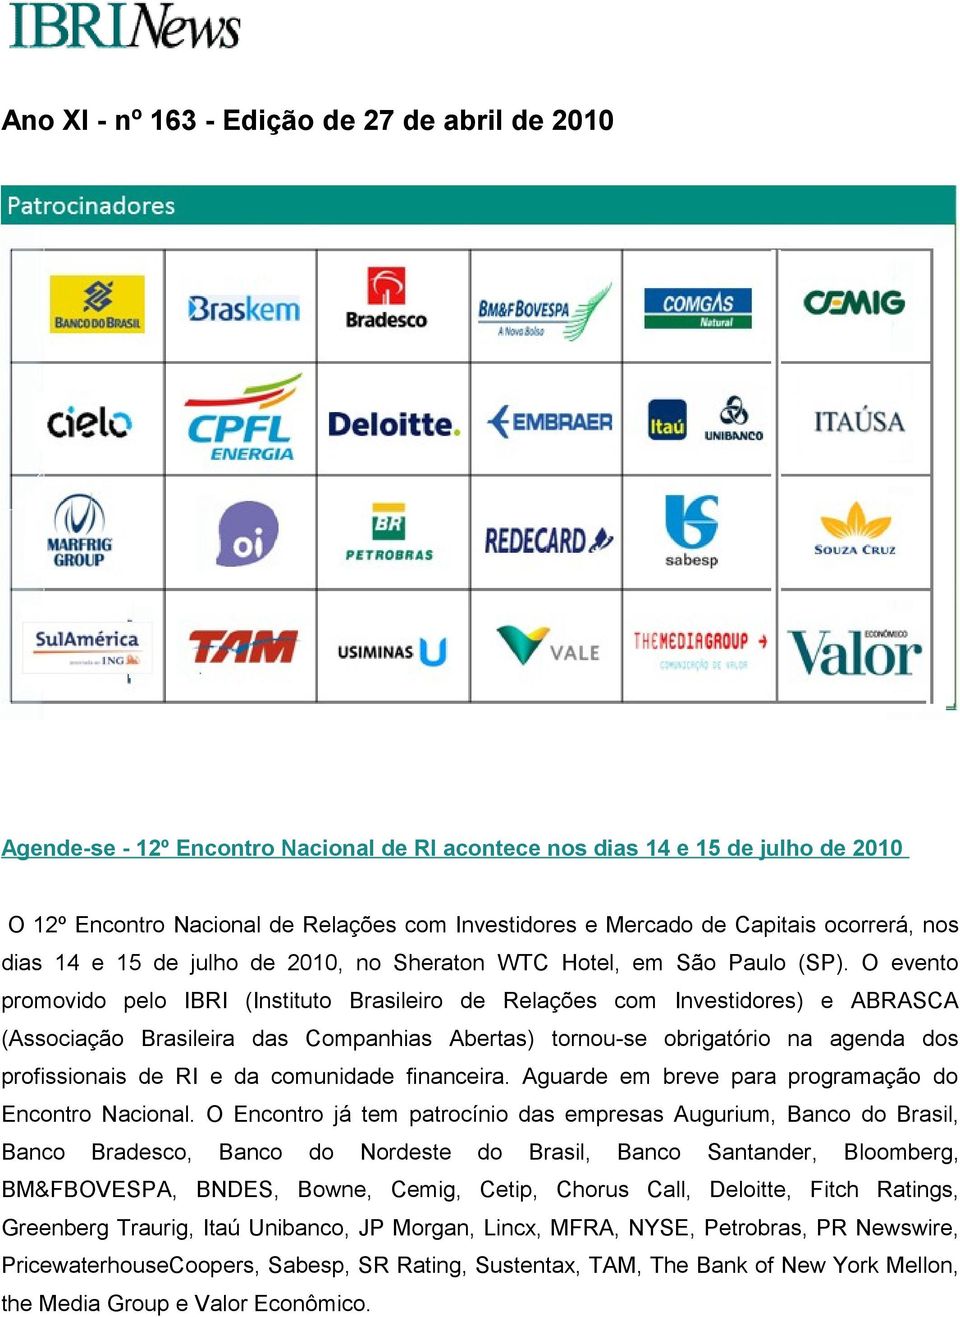 O evento promovido pelo IBRI (Instituto Brasileiro de Relações com Investidores) e ABRASCA (Associação Brasileira das Companhias Abertas) tornou-se obrigatório na agenda dos profissionais de RI e da